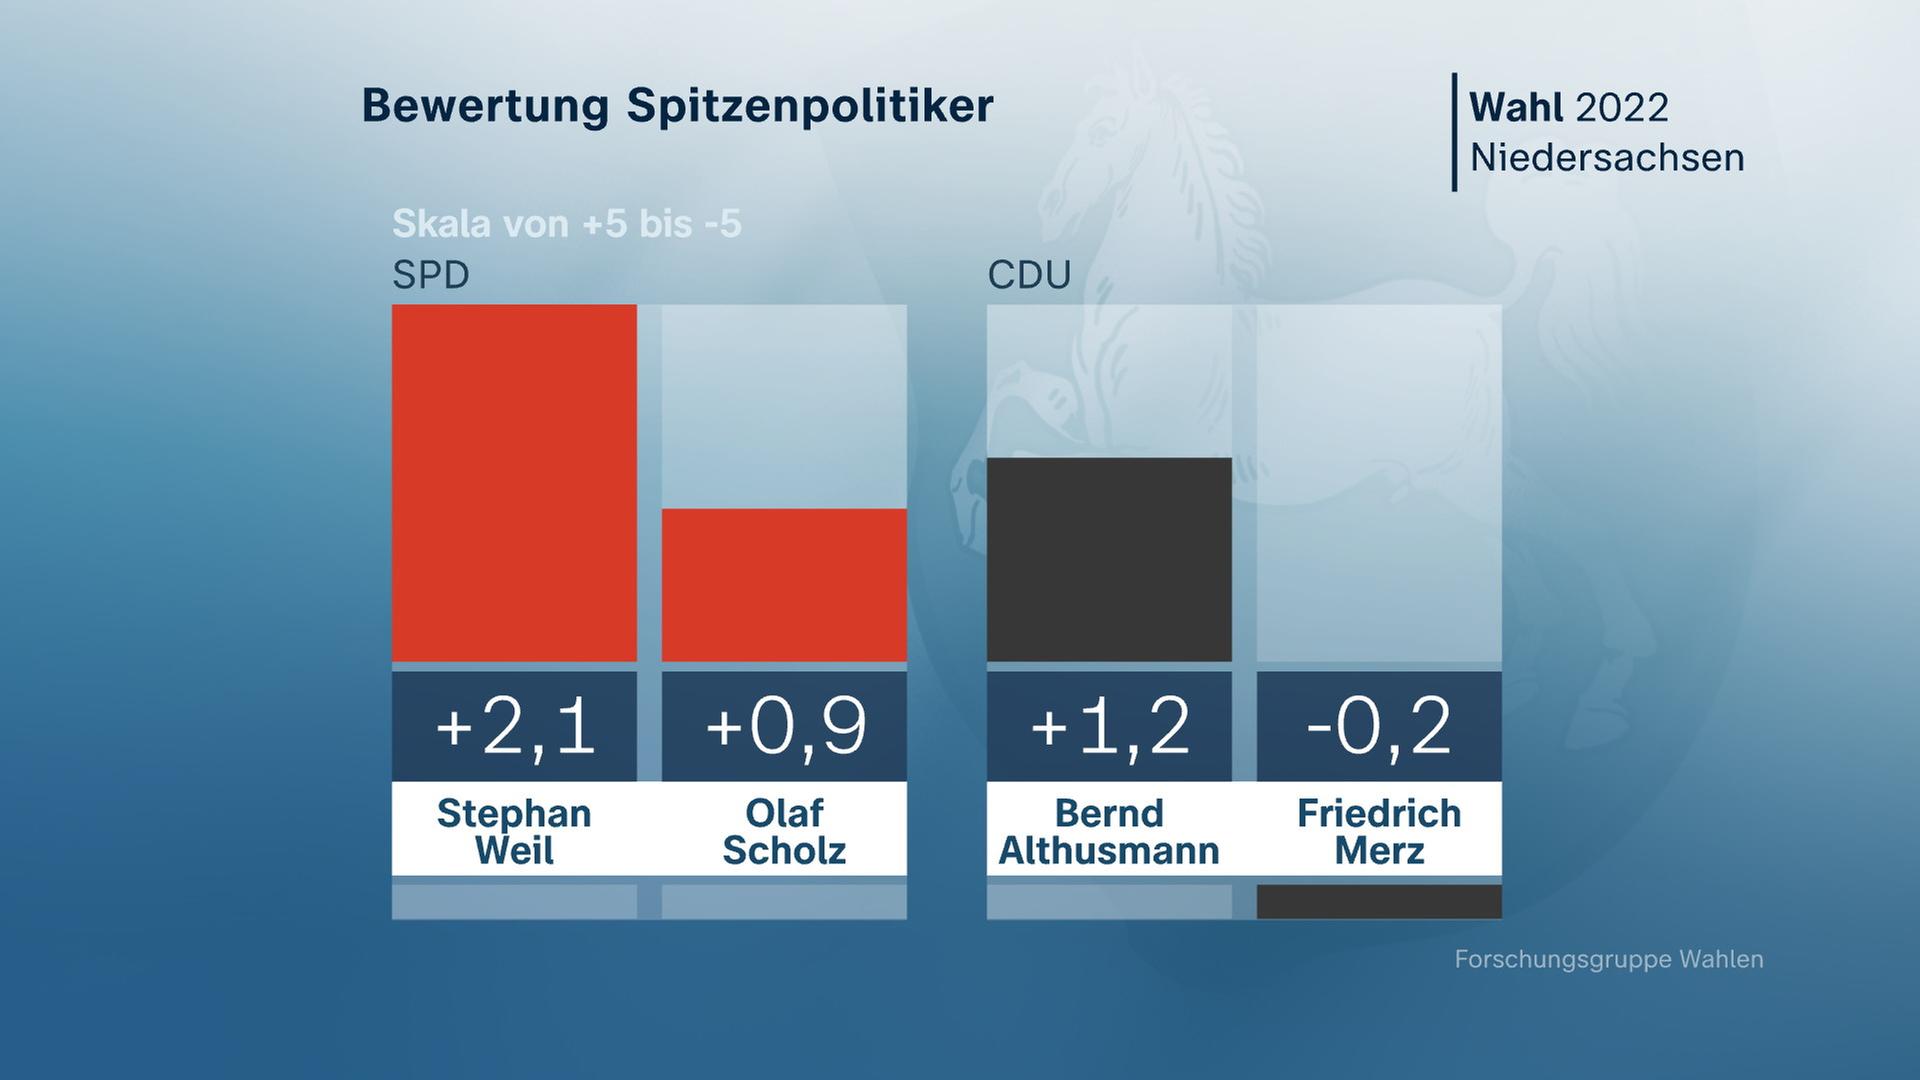 Landtagswahl in Niedersachsen: Bewertung der Spitzenpolitiker